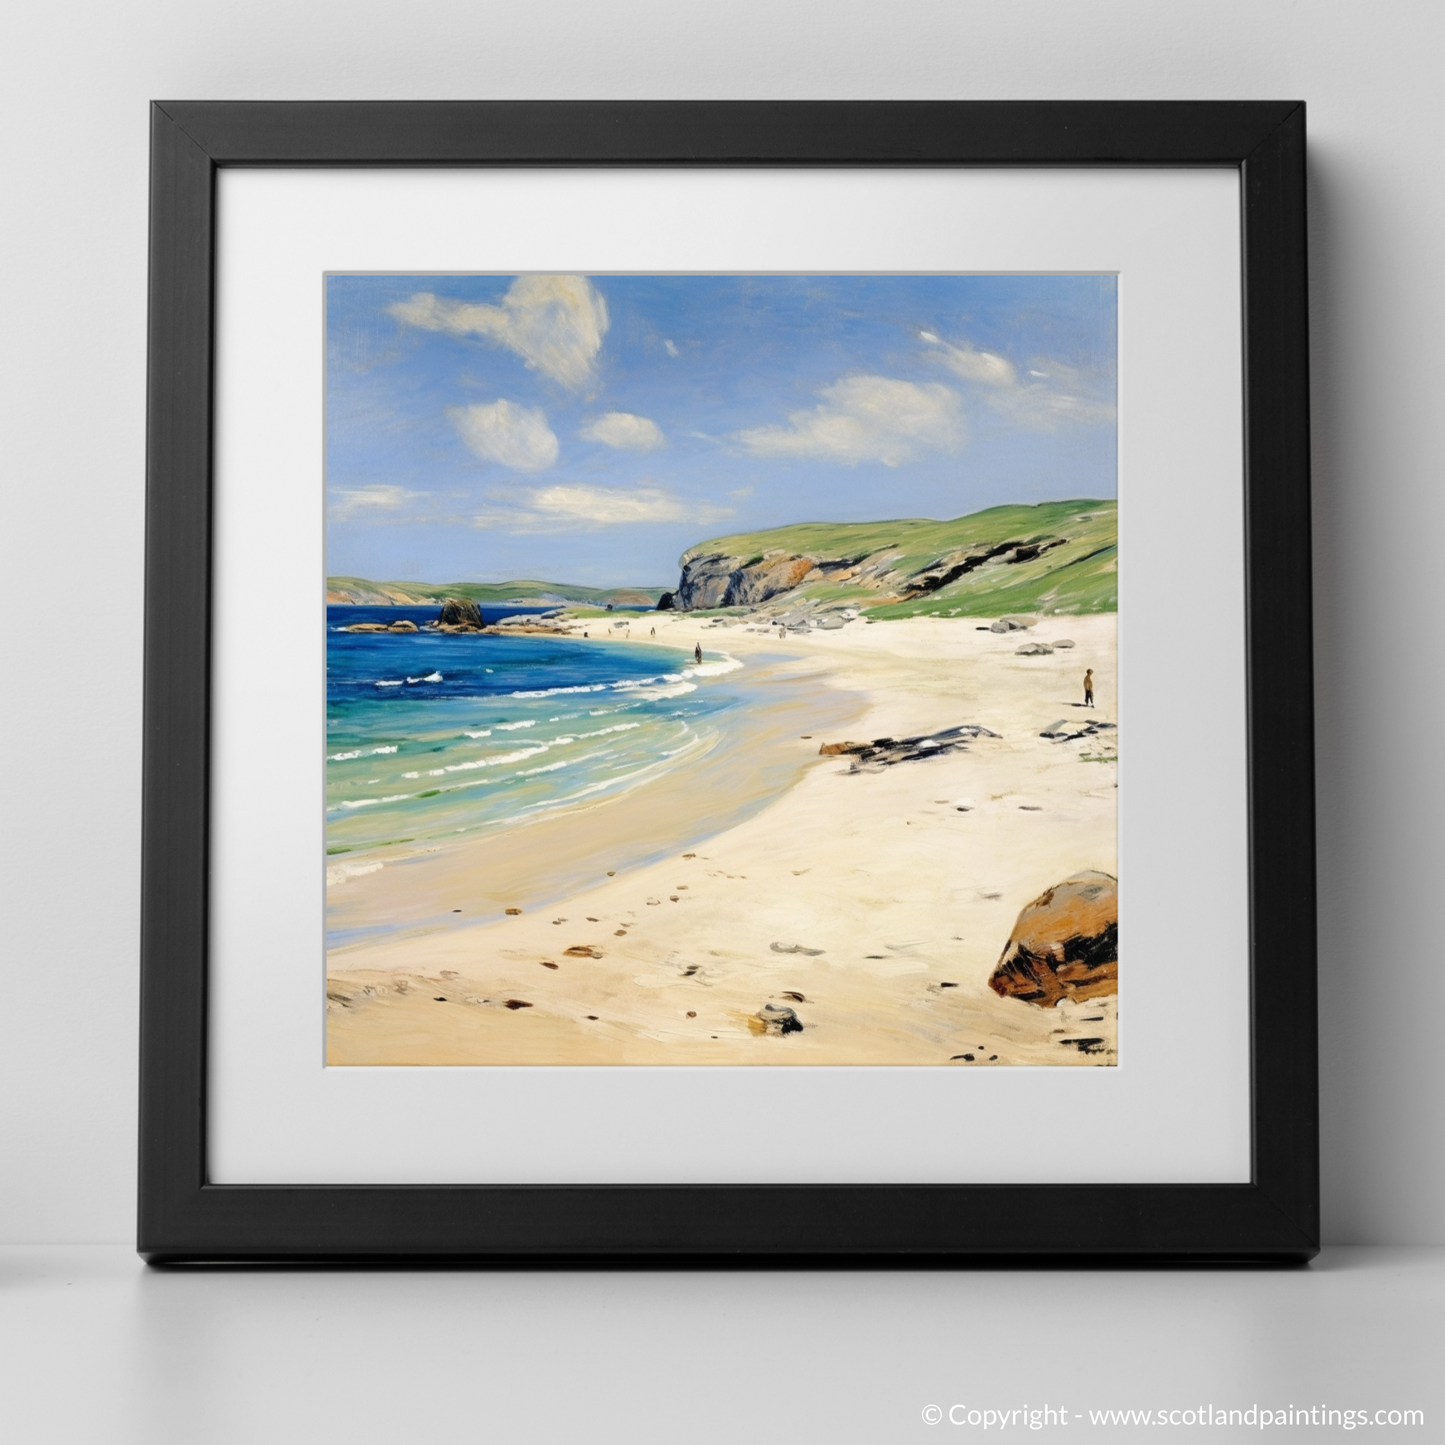 Serene Shores of Sandwood Bay: An Impressionist Ode to Sutherland's Coastal Gem